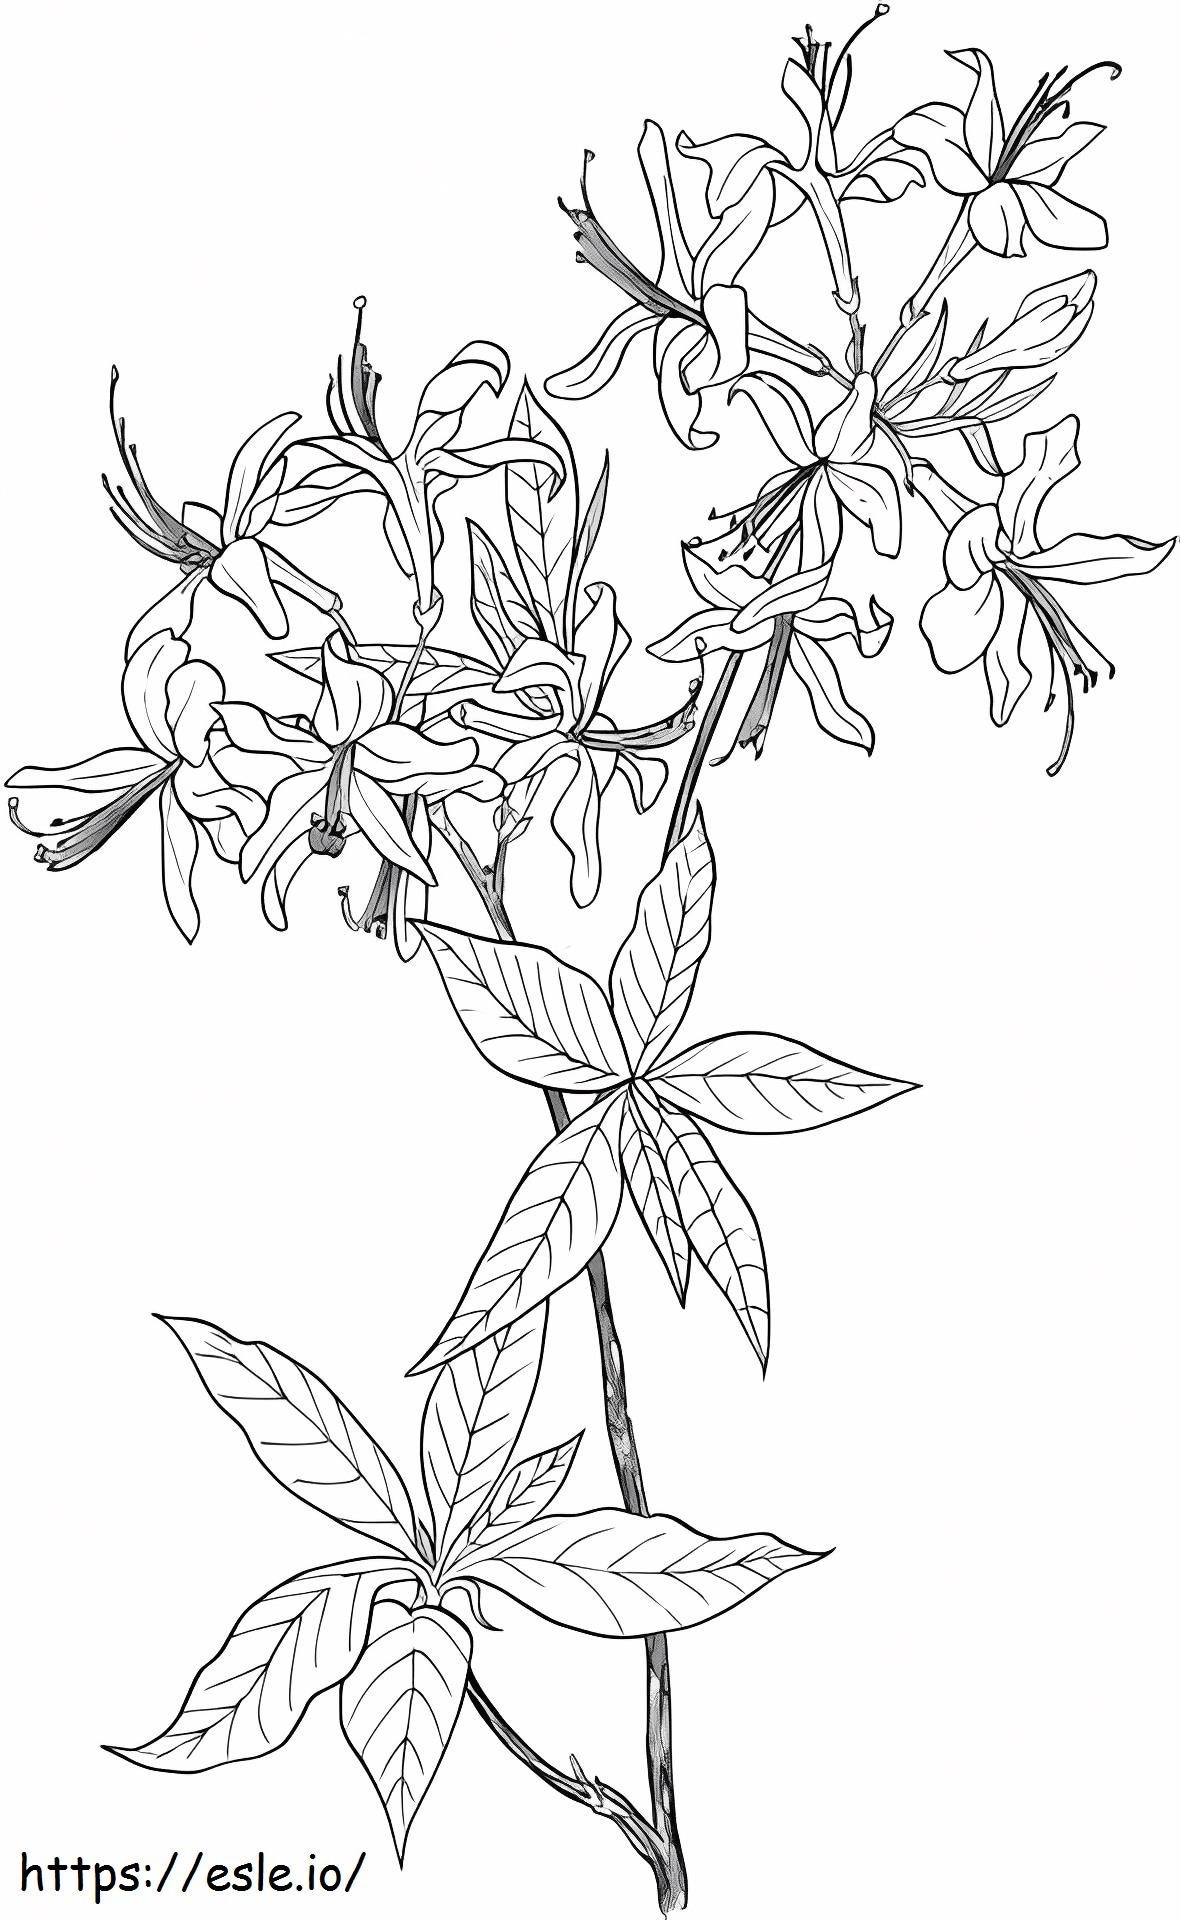 _Azalea Rododendro Flor silvestre para colorear